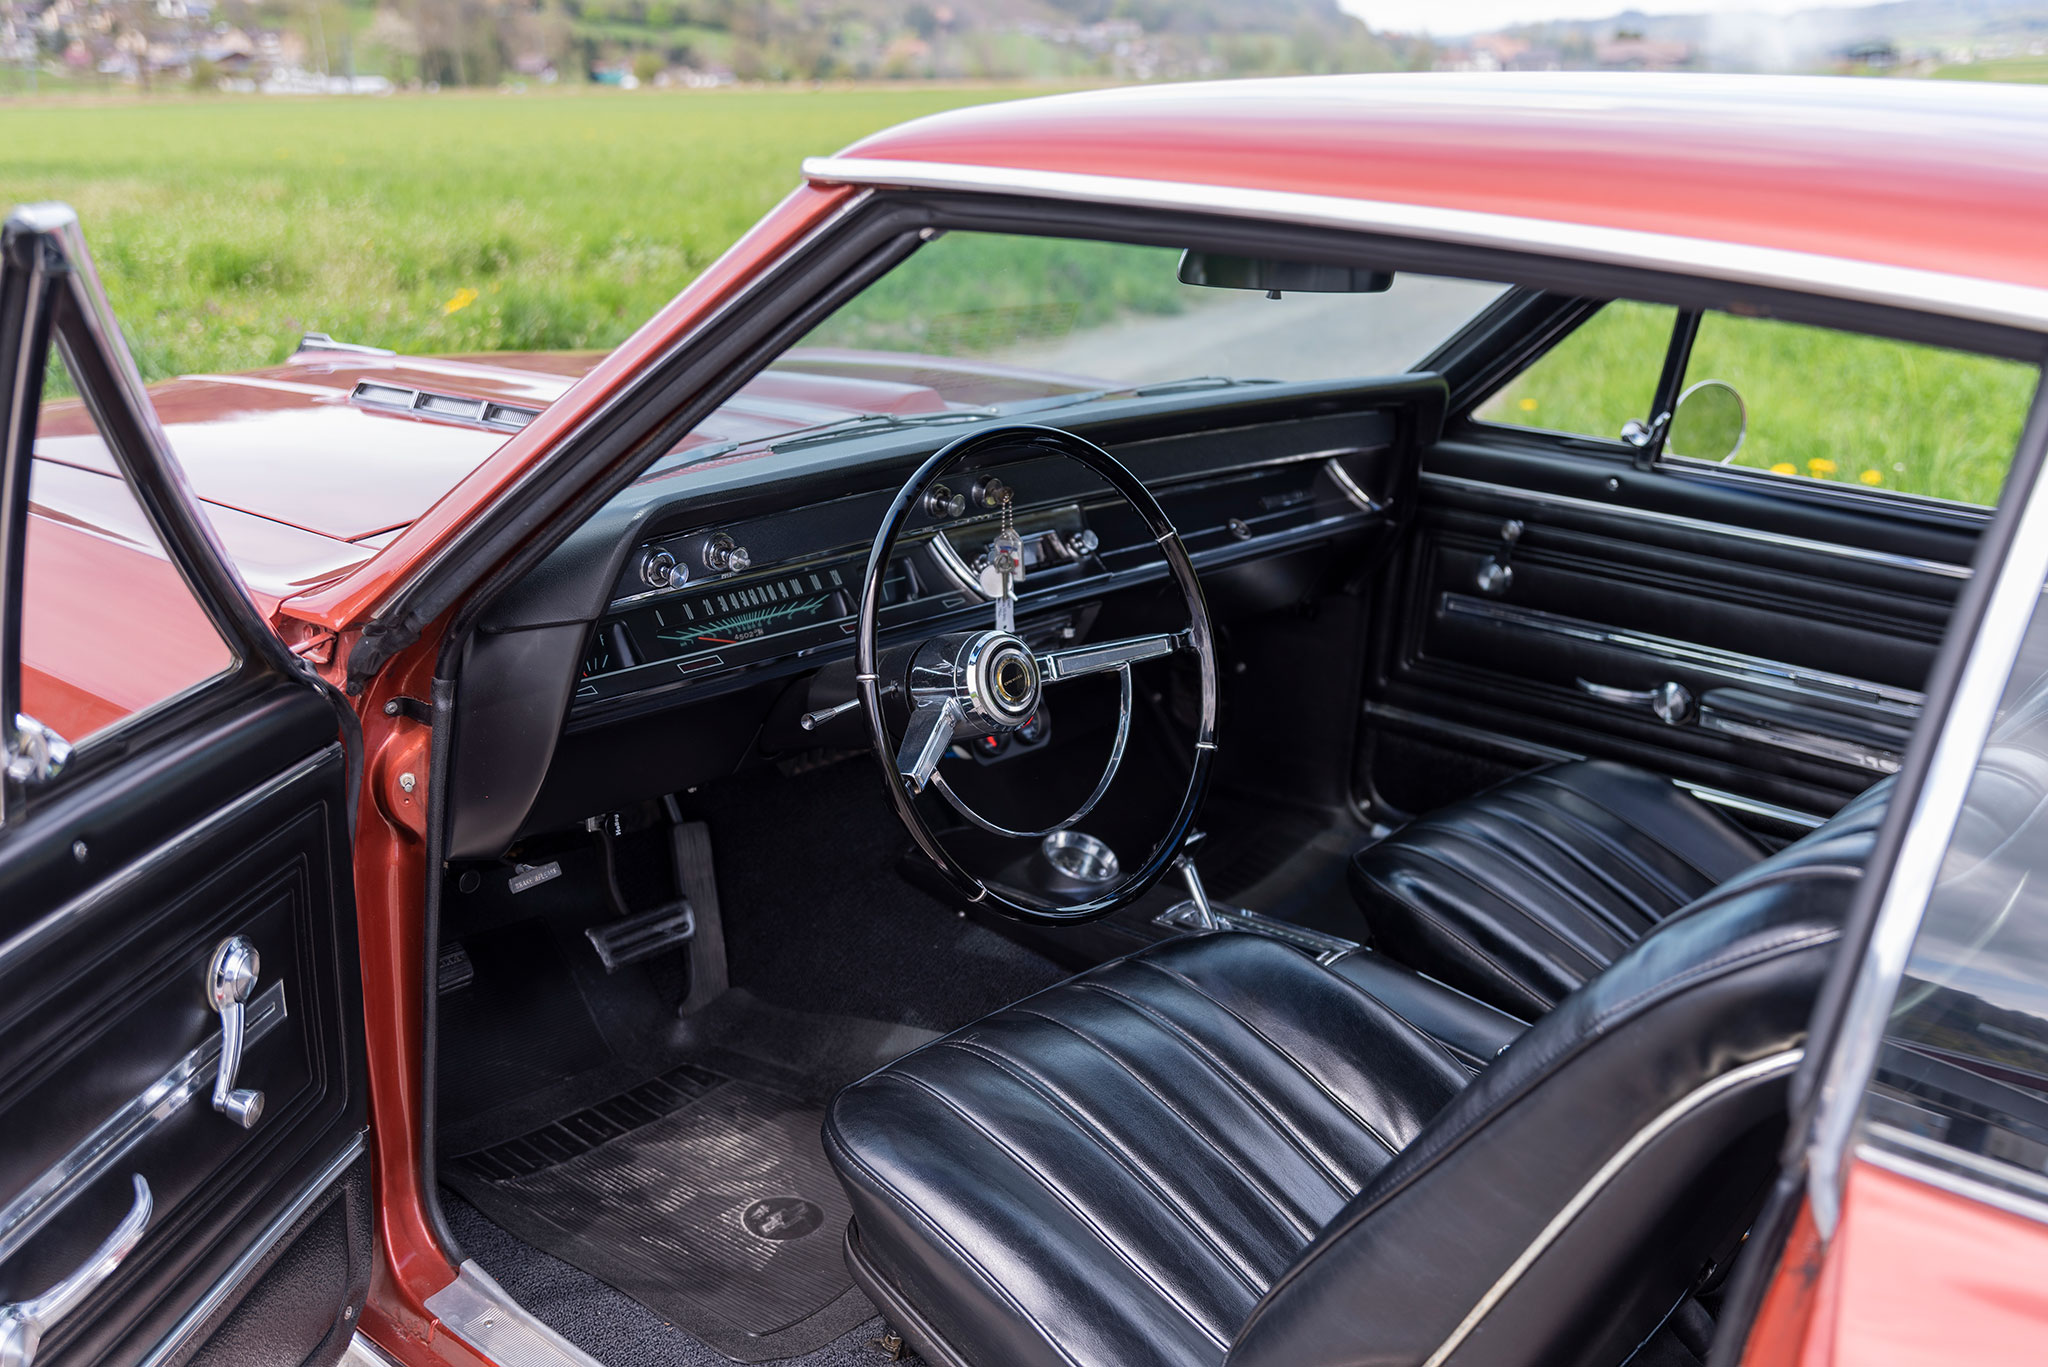 1966 Chevrolet Chevelle SS 396 – très bel intérieur confortable qui accueille 5 personnes.